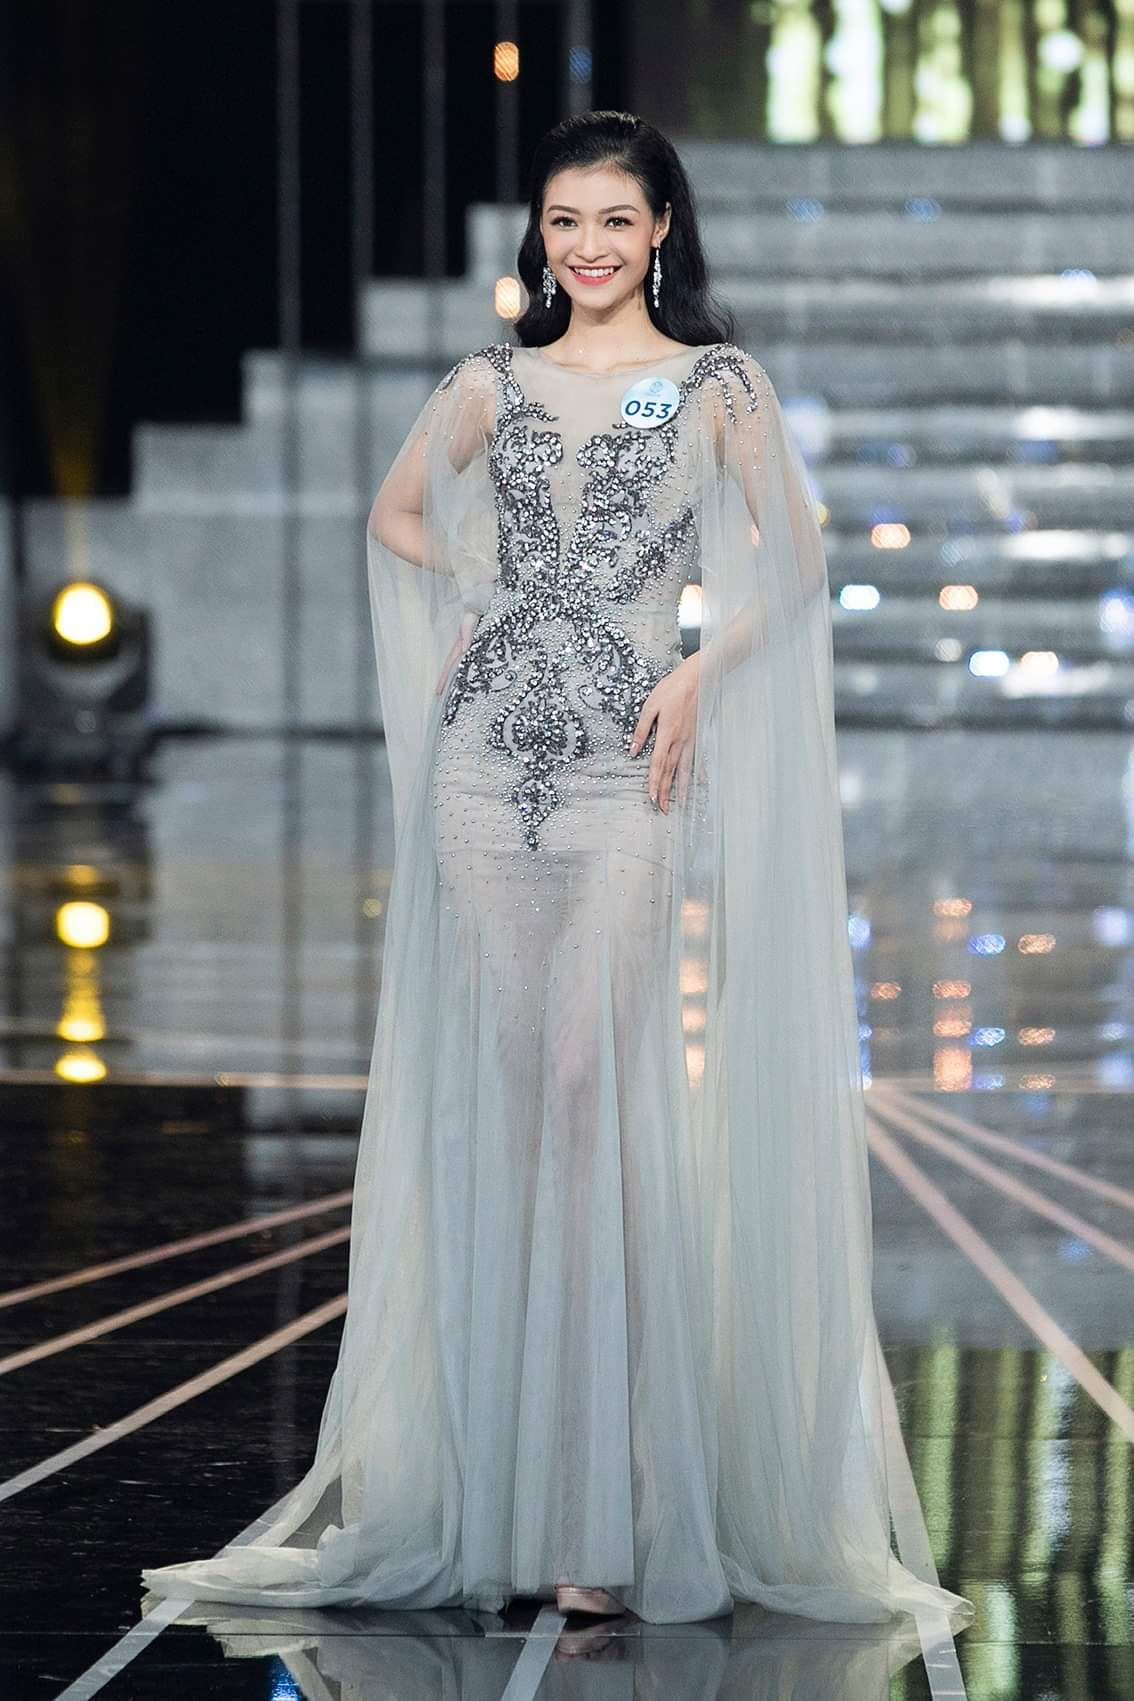 Tại cuộc thi Hoa hậu Thế giới Việt Nam 2019, á hậu 1 luôn xuất hiện với vẻ ngoài nhẹ nhàng trong những bộ cánh nữ tính, màu sắc nhã nhặn.